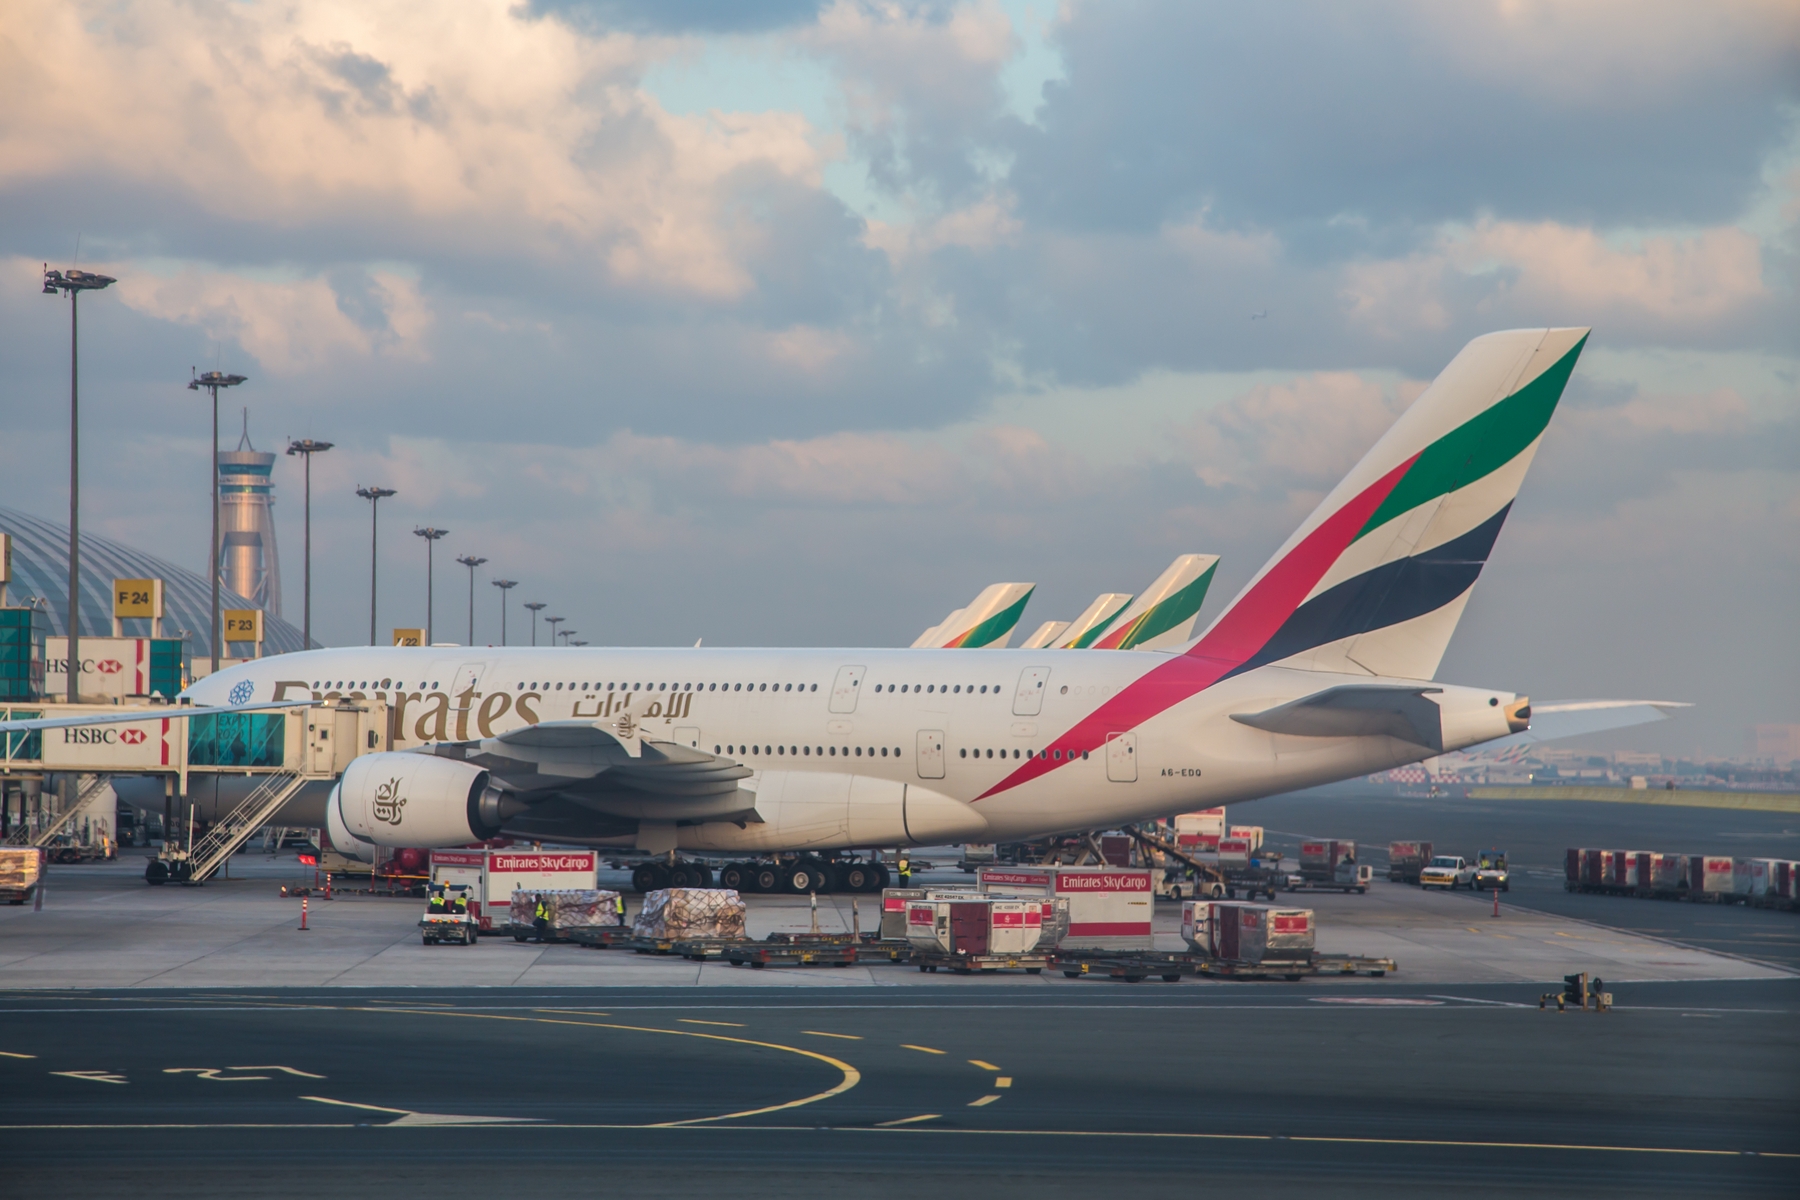 Emirates с 1 декабря возвращает А380 на рейсы в Москву